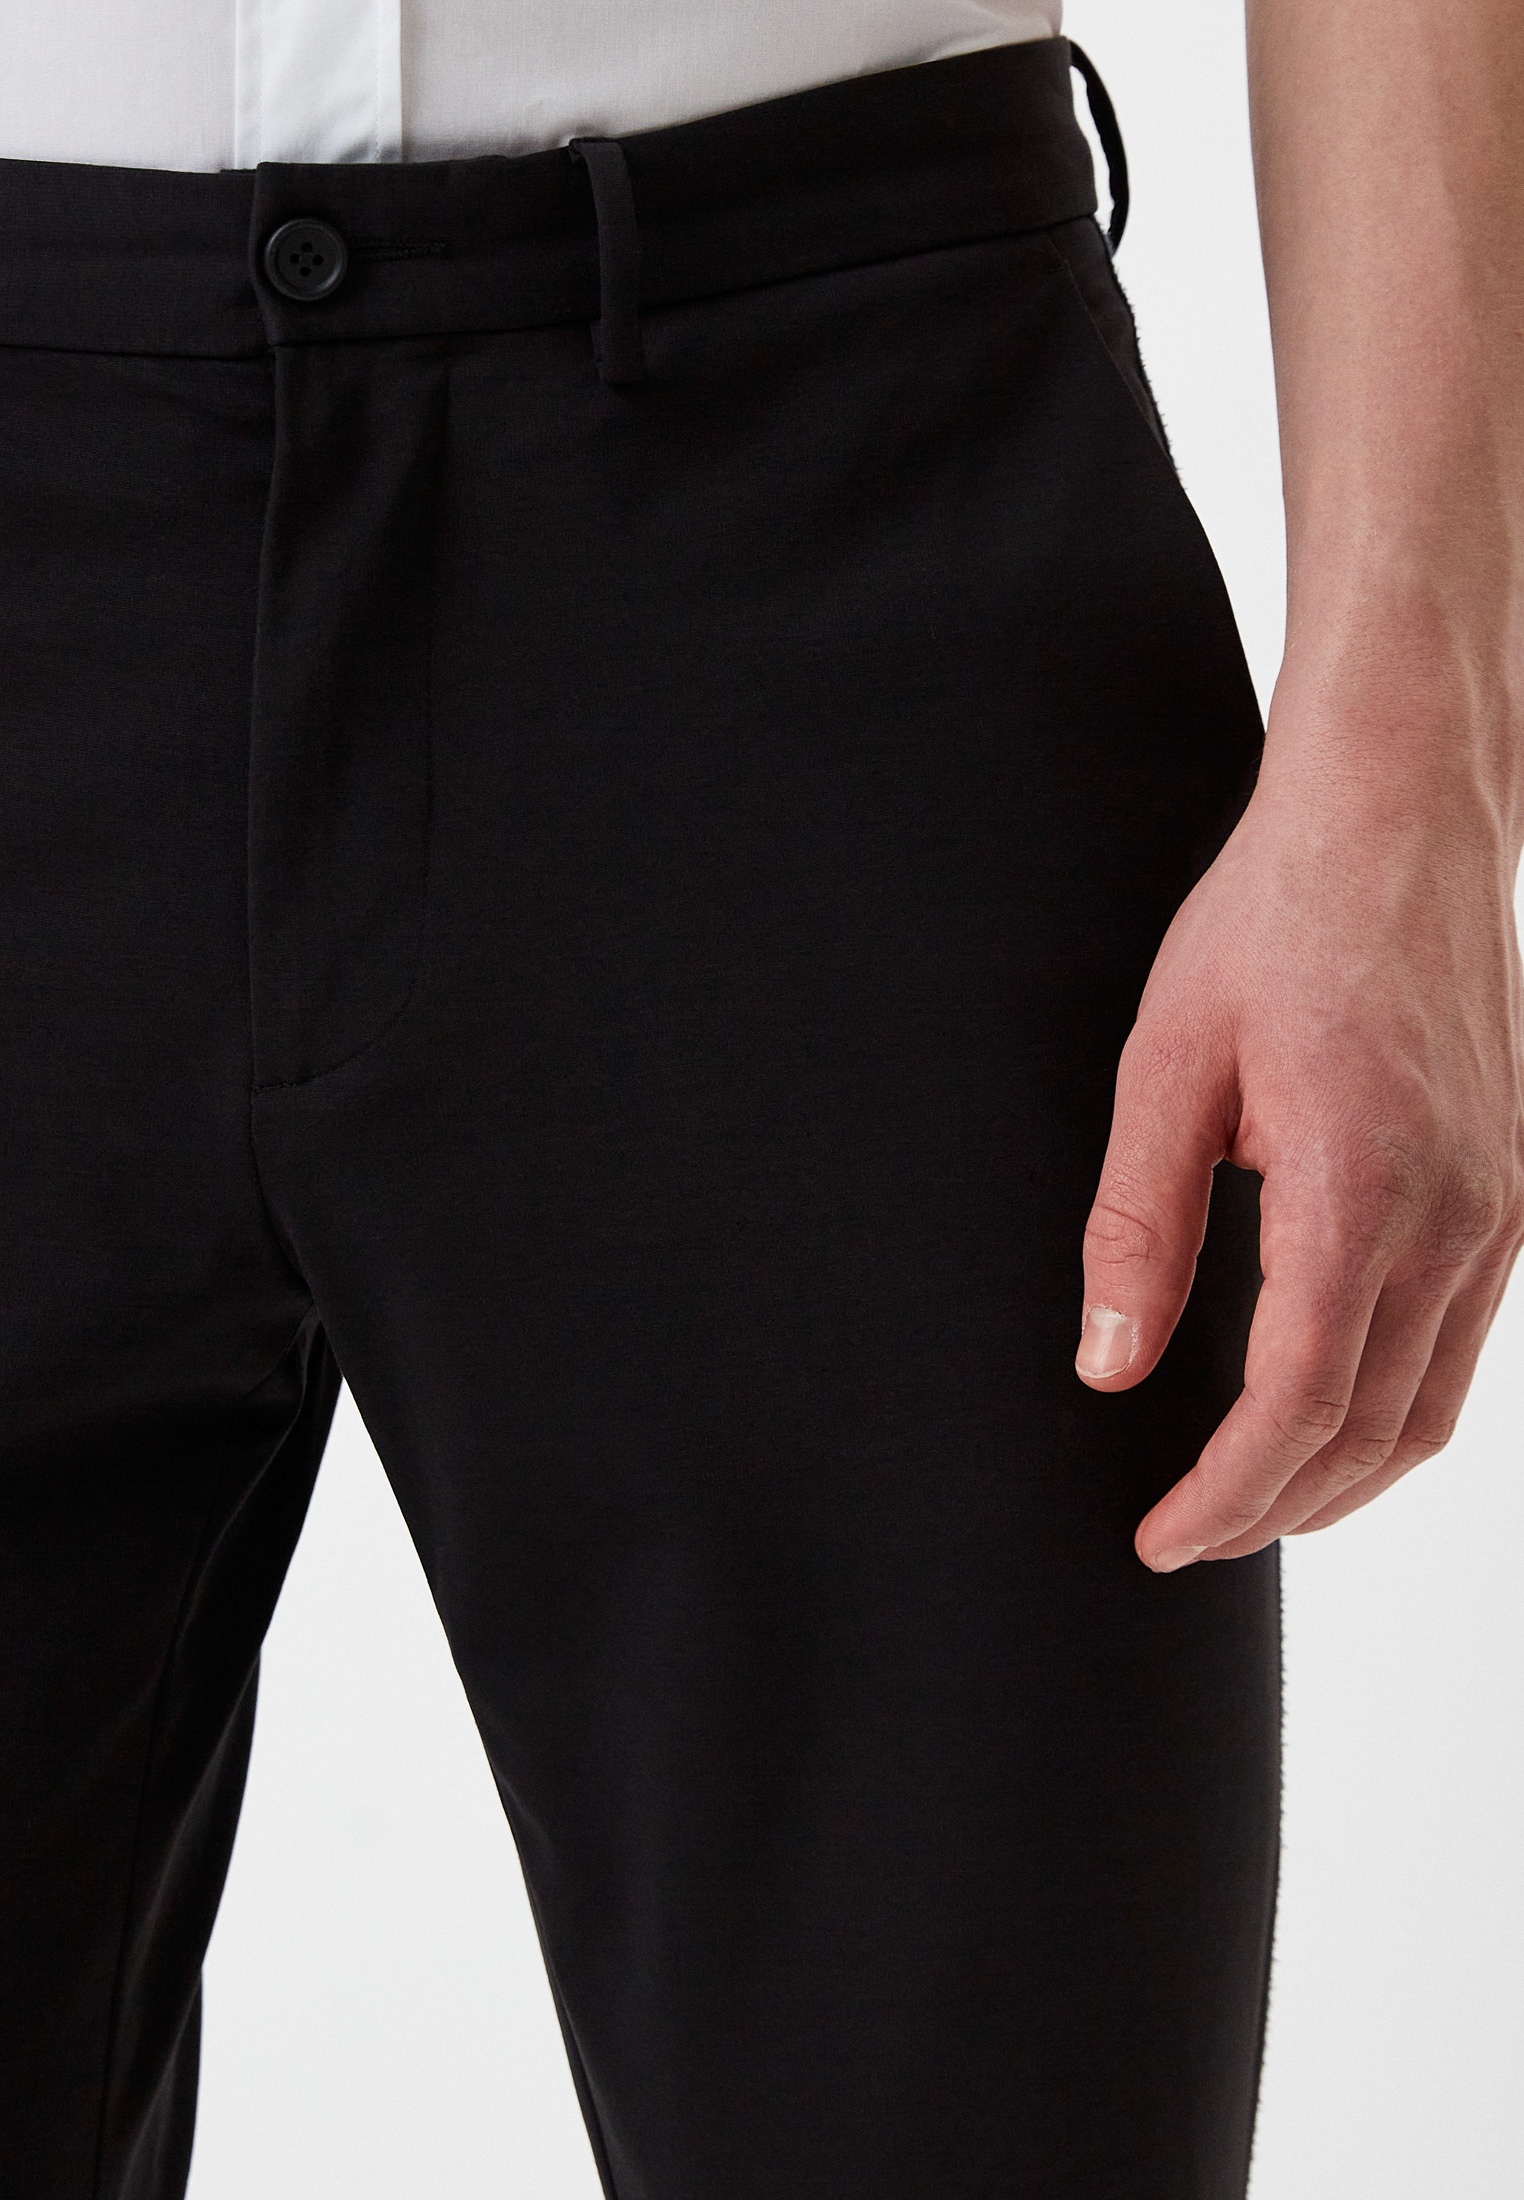 Мужские повседневные брюки Bikkembergs (Биккембергс) C 1 089 80 E 2031: изображение 4